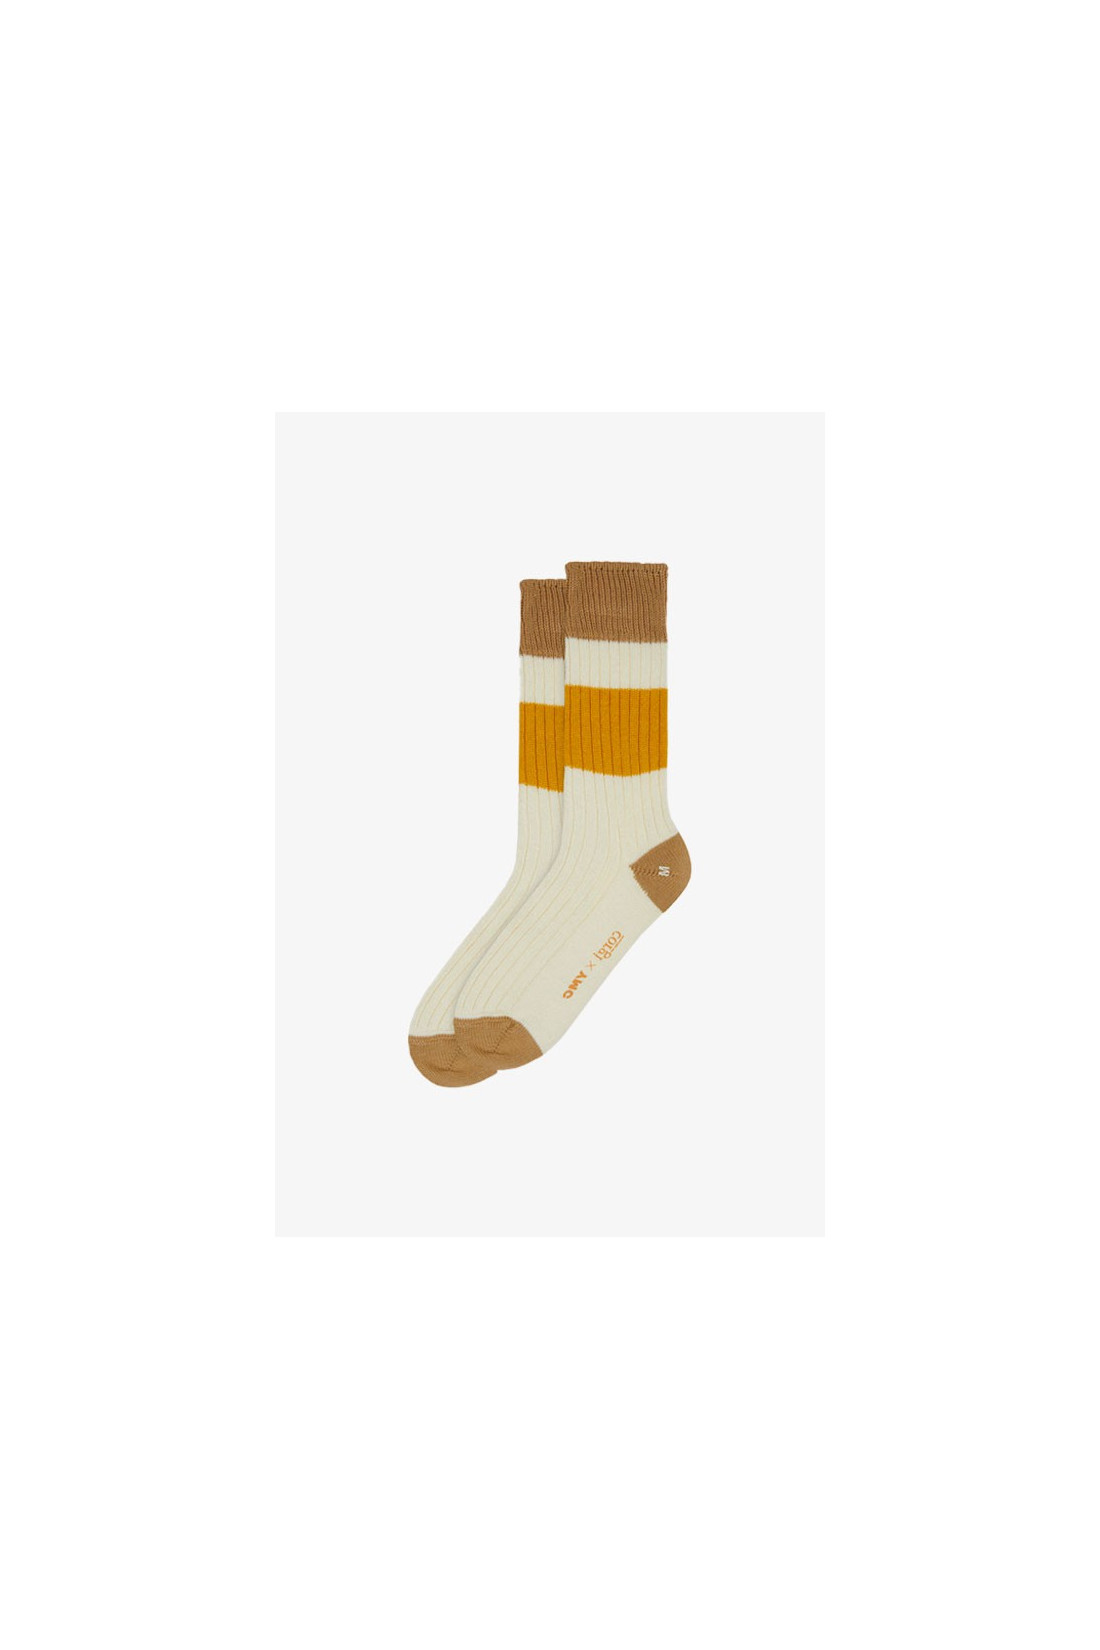 YMC / Sport cotton rib sport socks Ecru / sand